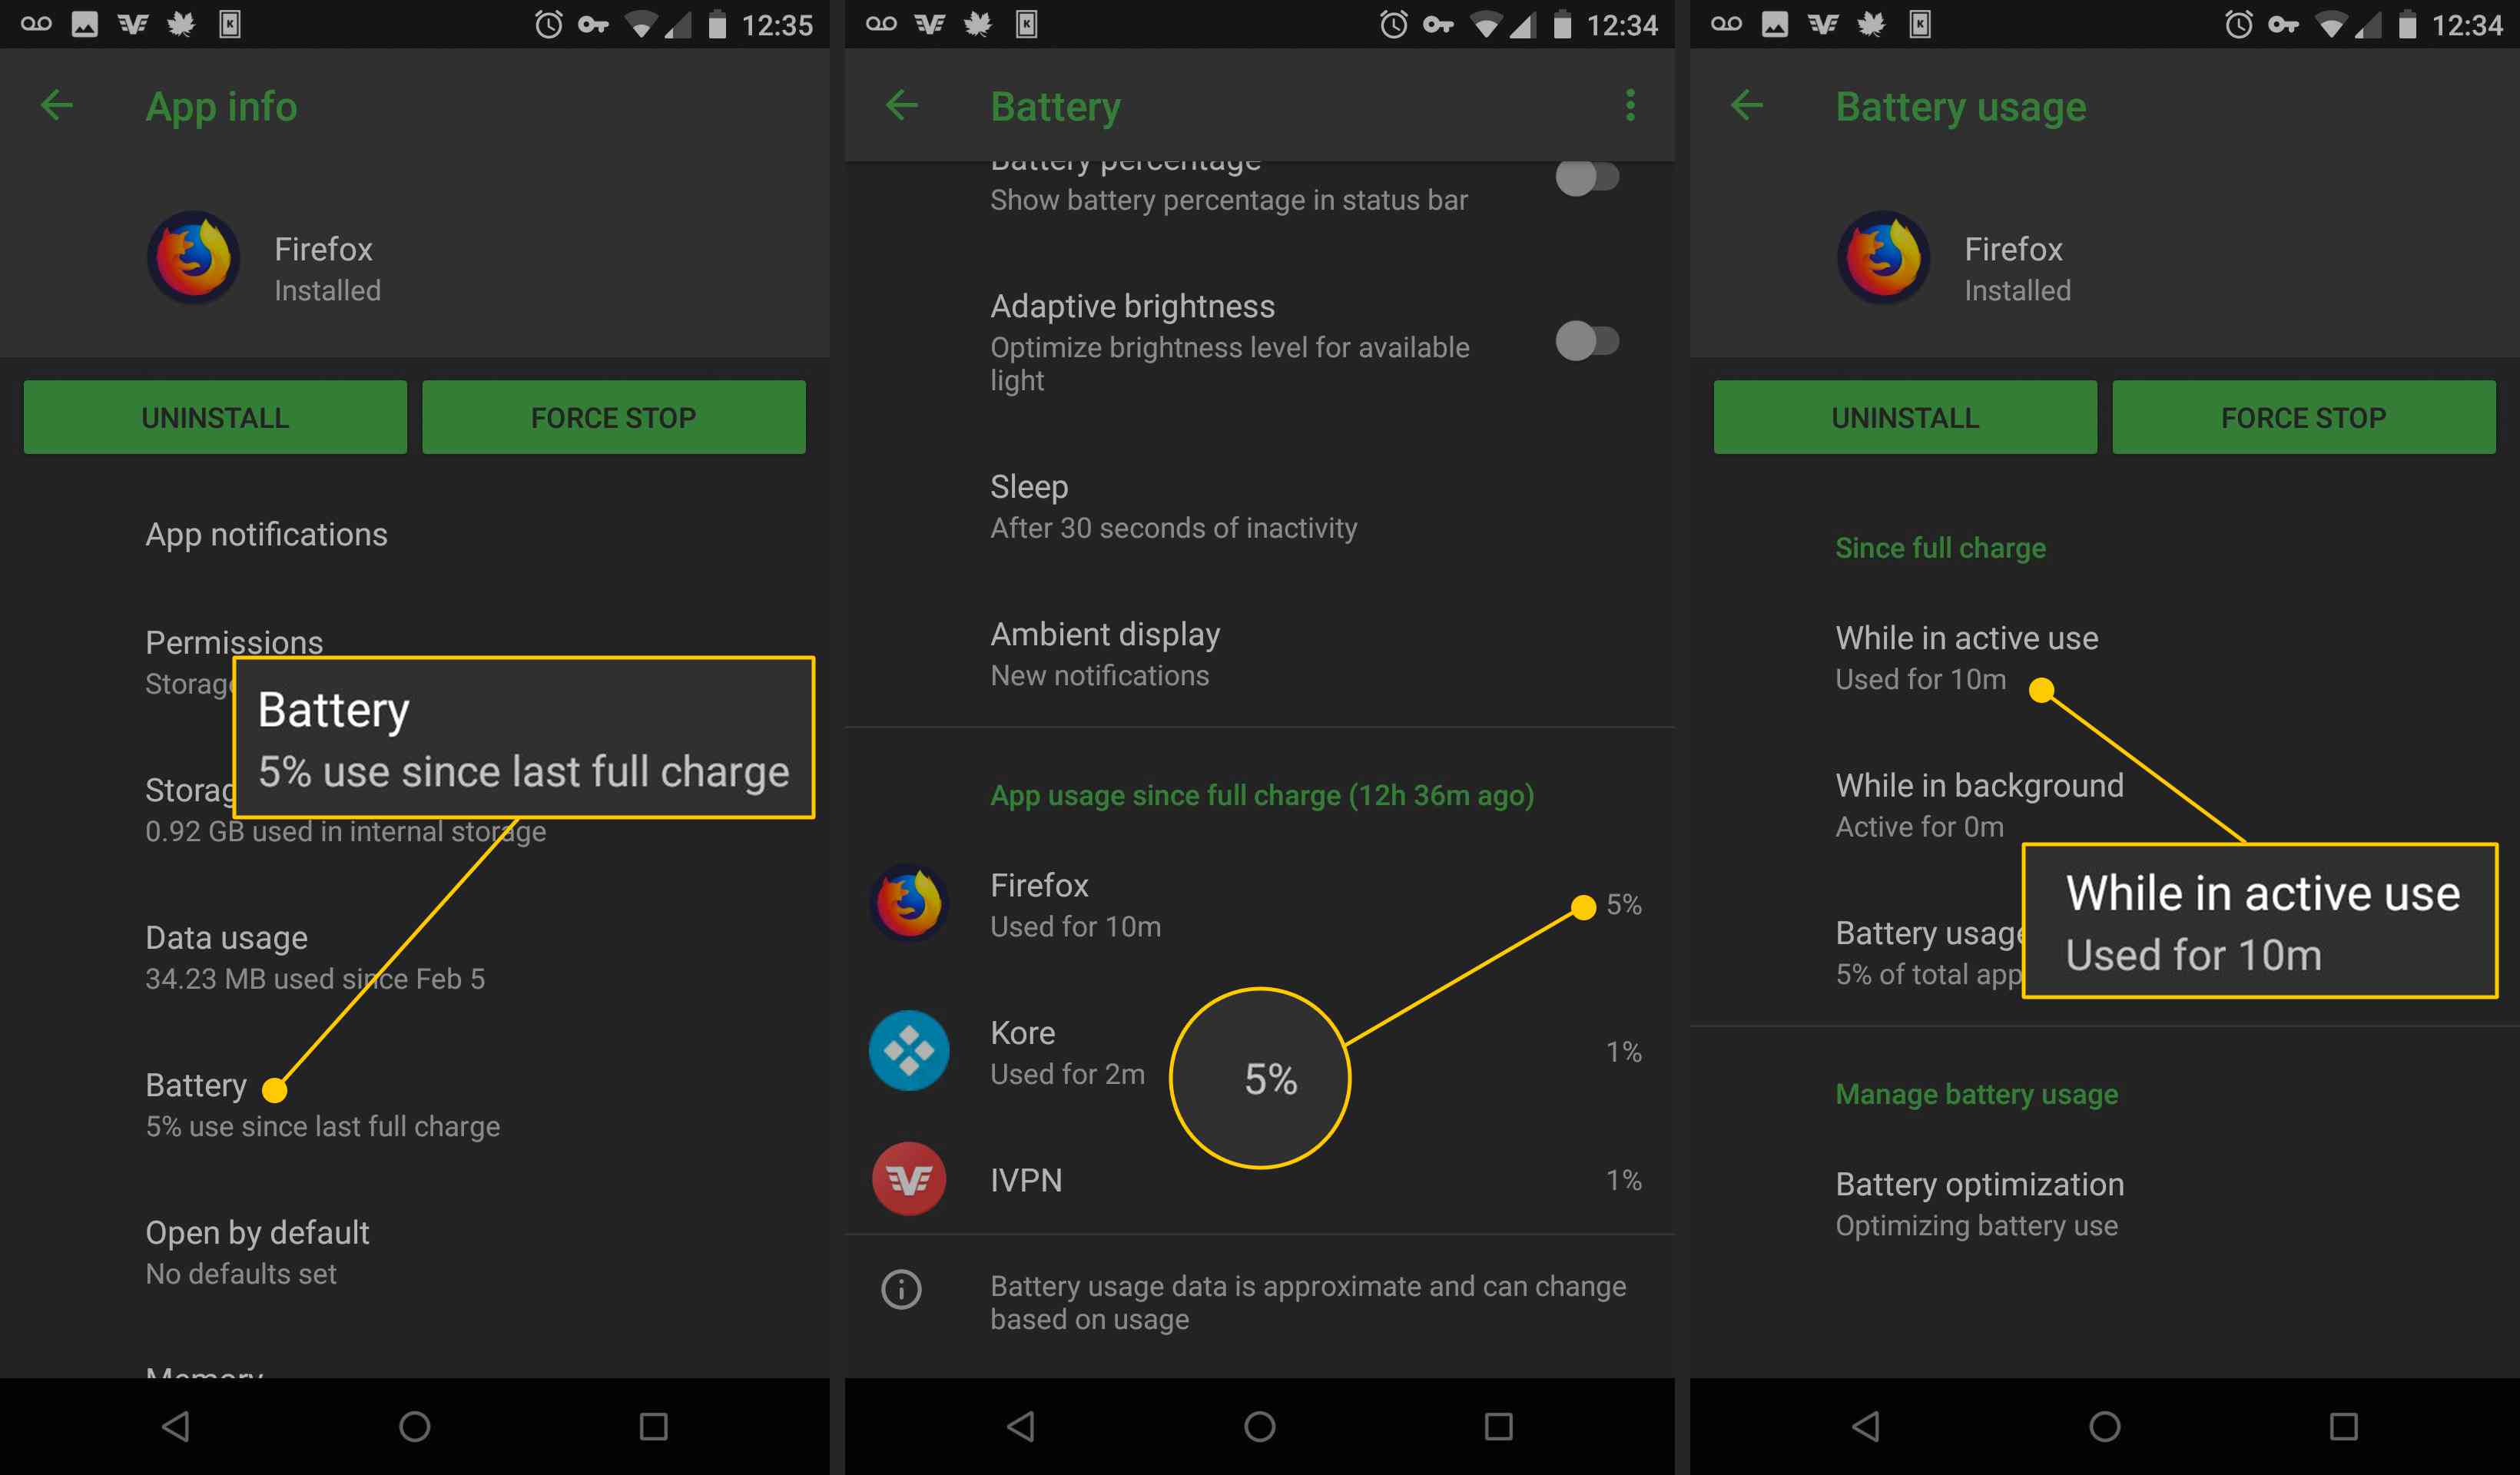 Baterie, využití baterie Firefoxu, při aktivním používání v systému Android